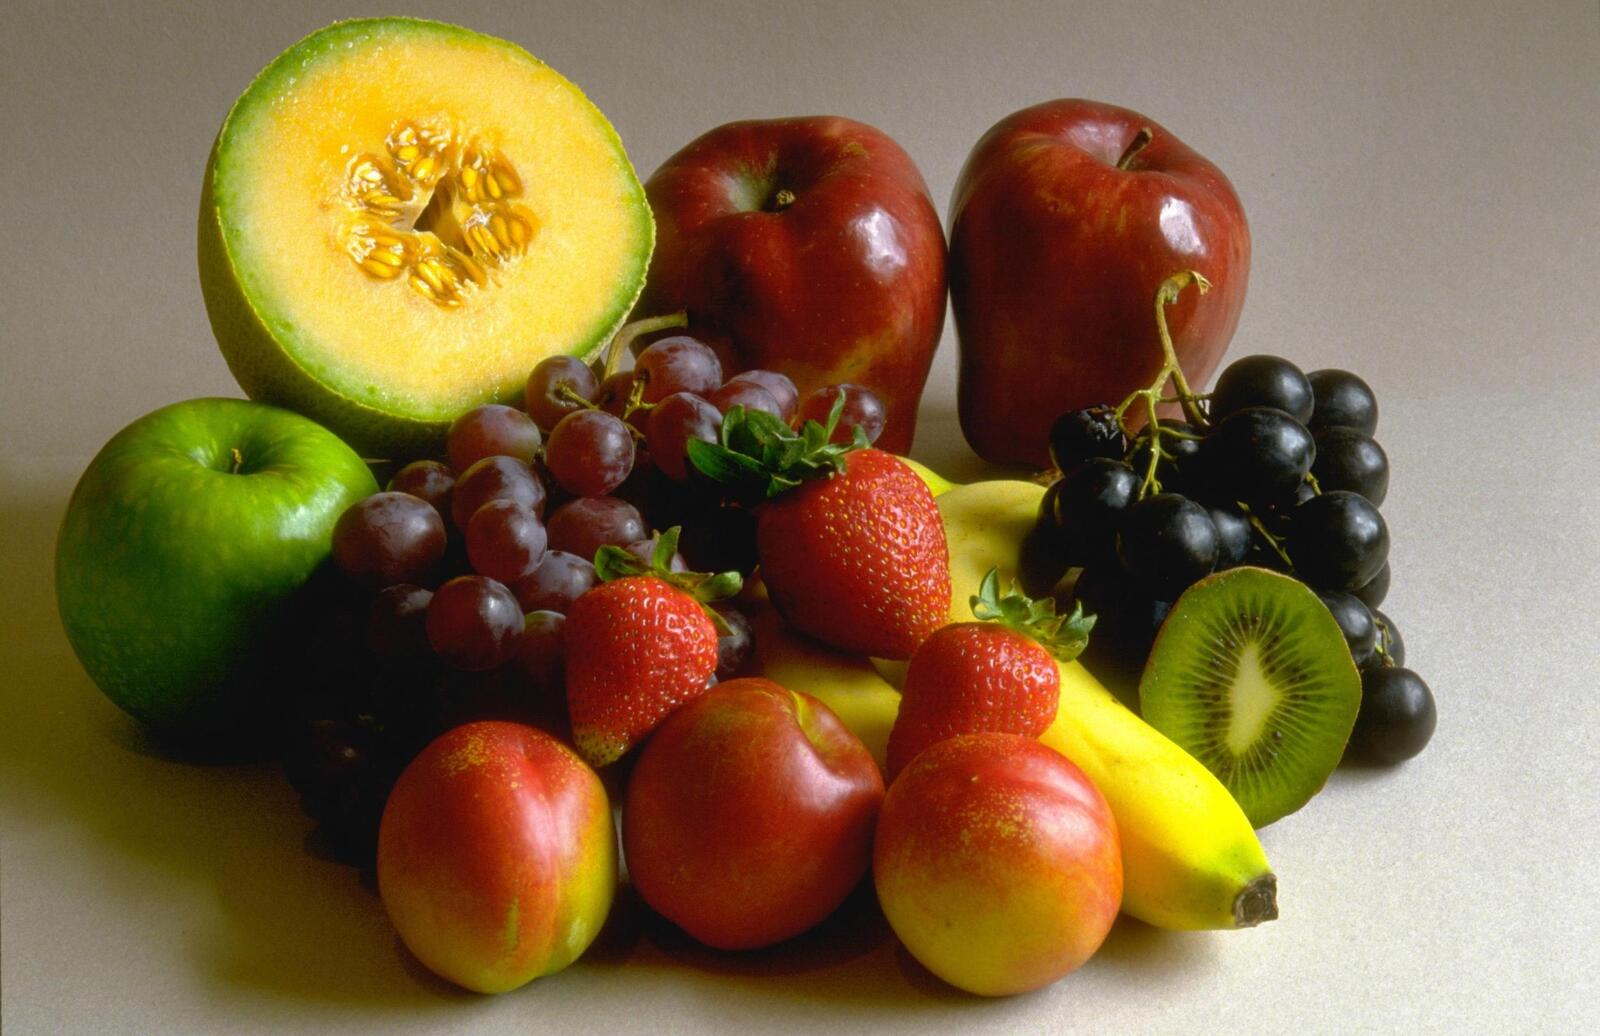 И фрукты там где. Разные фрукты. Плод ягода. Овощи и фрукты. Фрукты фото.